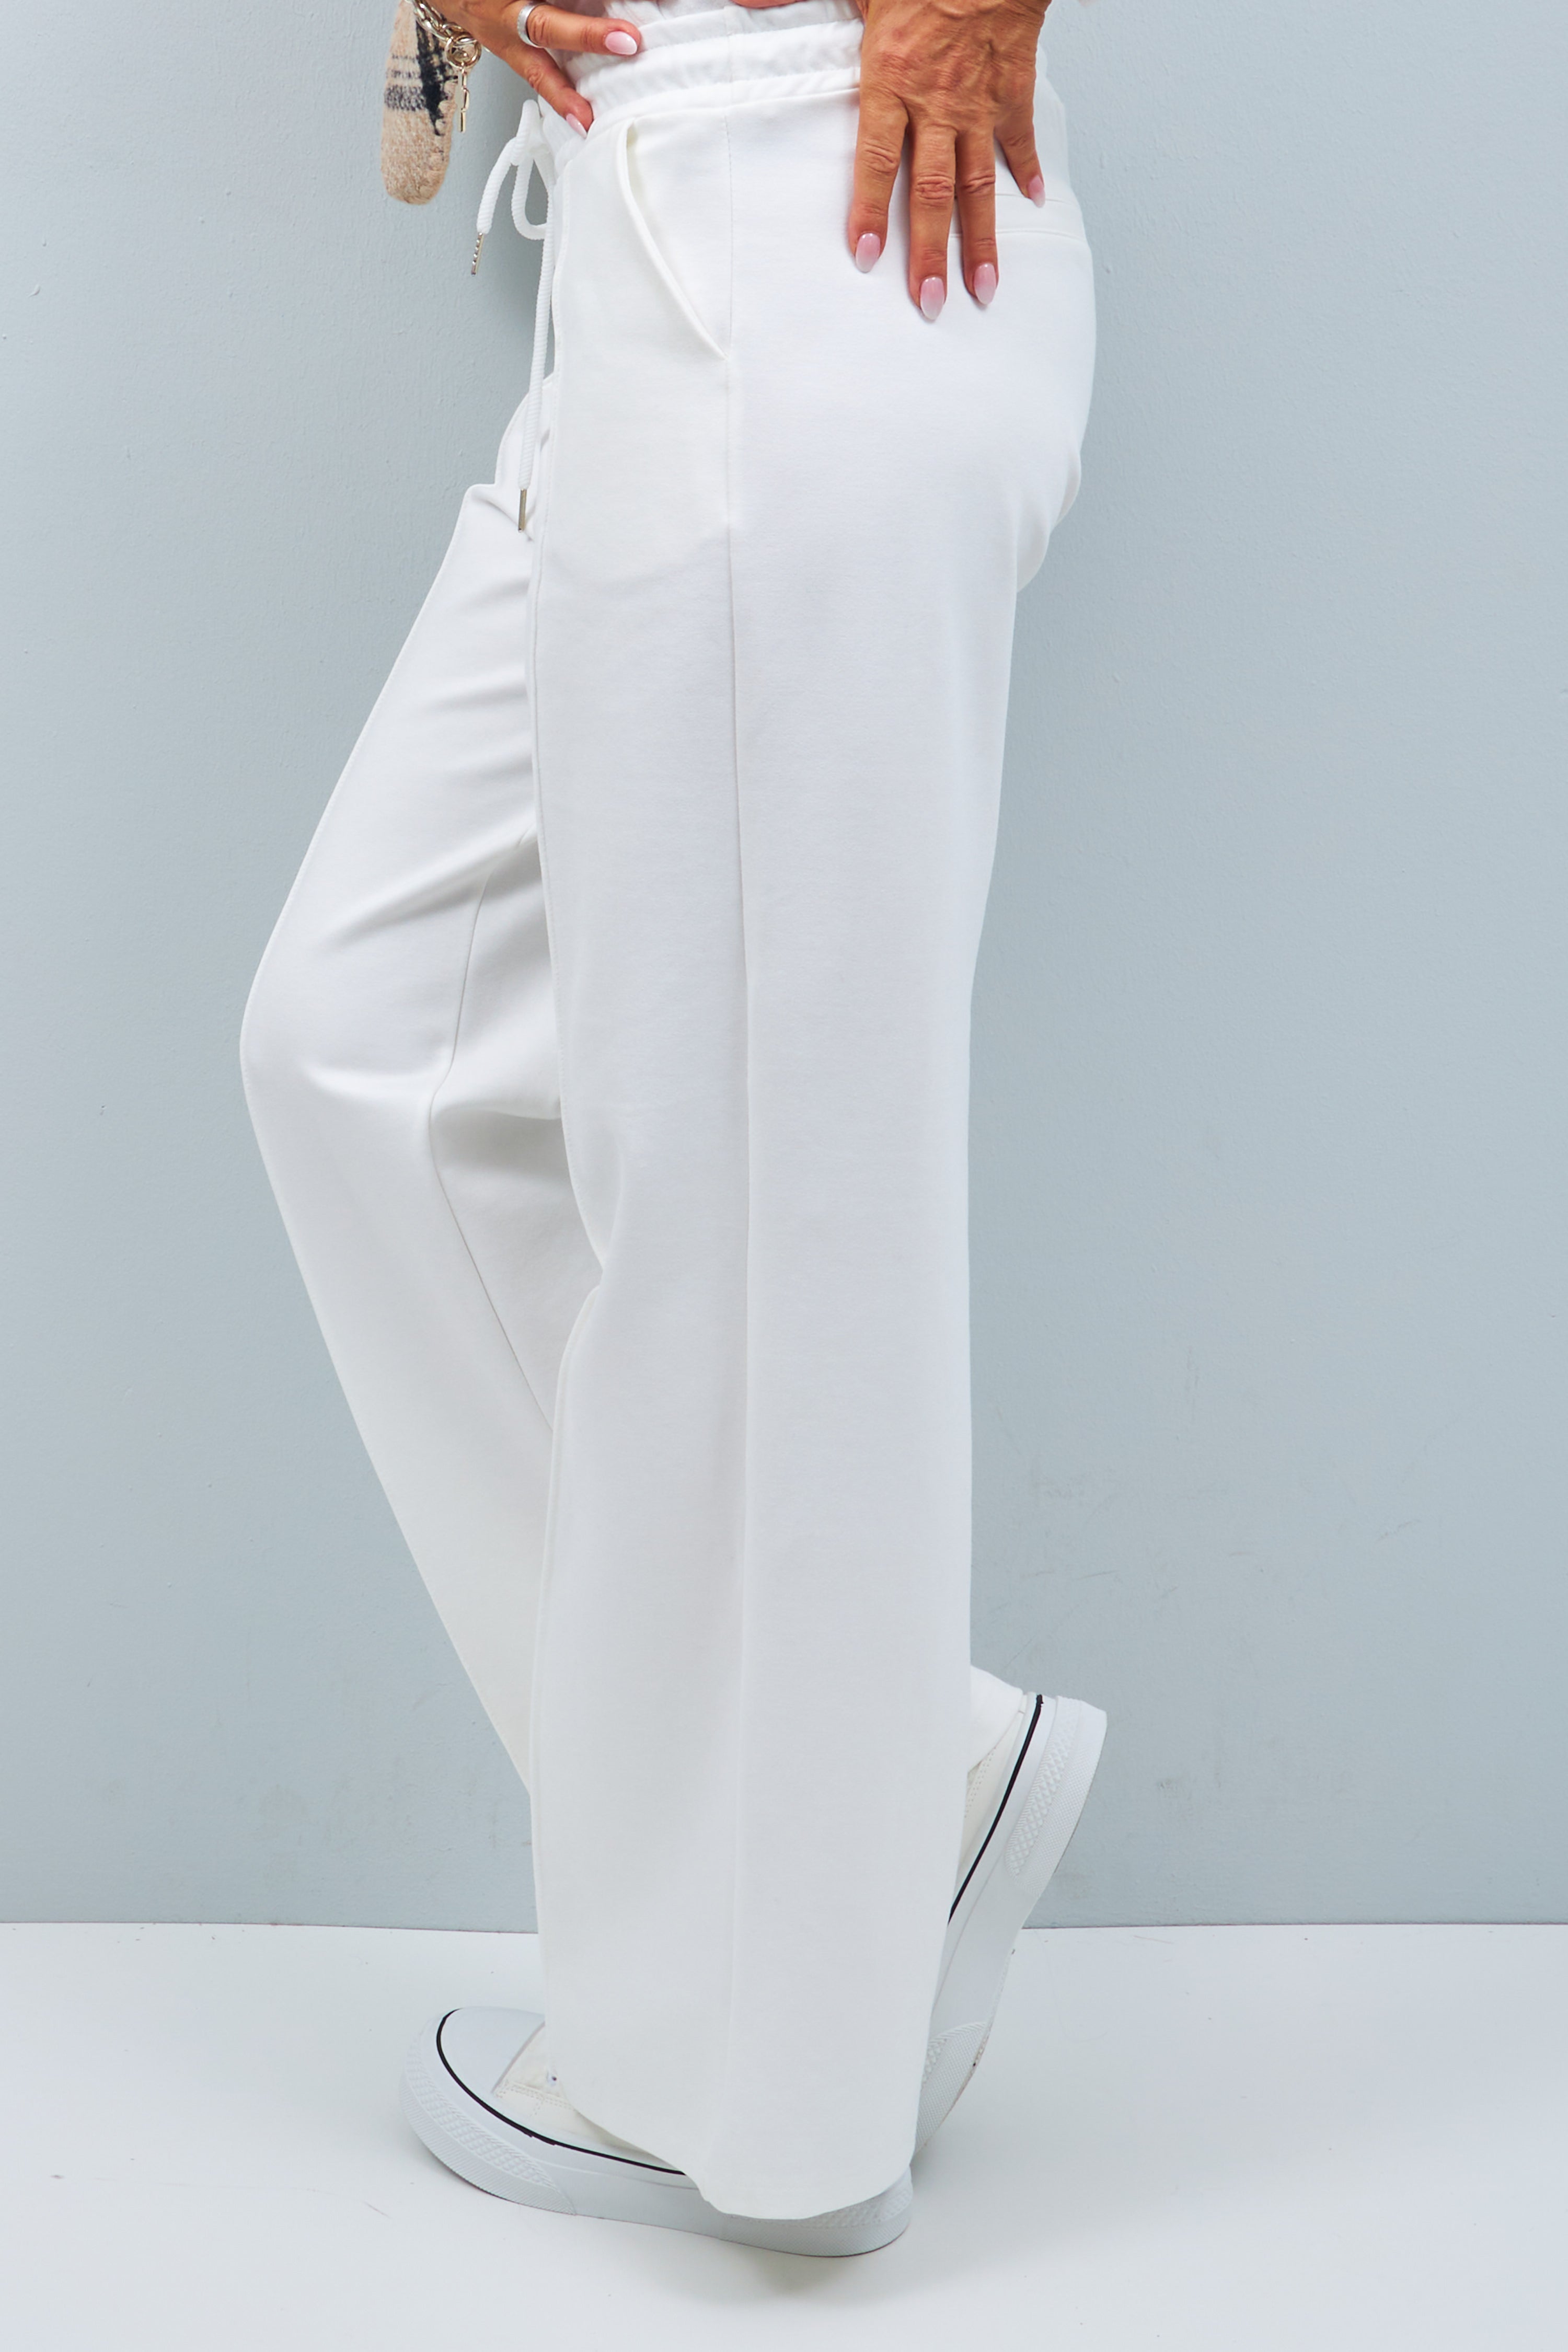 Suit pants, off-white